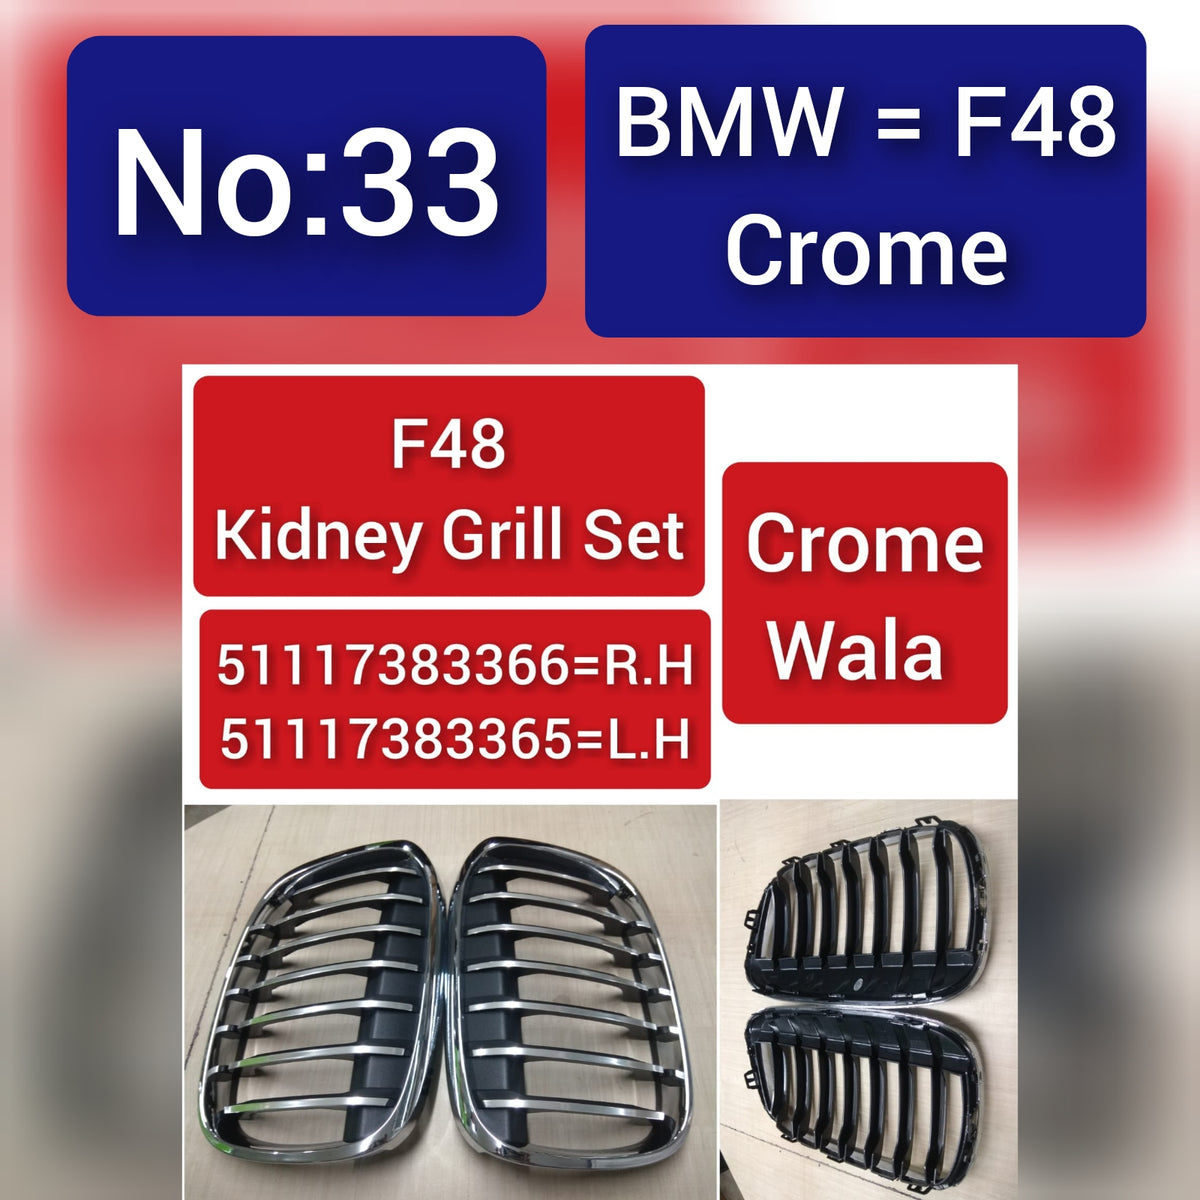 BMW = F48 Crome F48 Kidney Grill Set 51117383366=R.H, 51117383365=L.H Crome Wala Tag 33